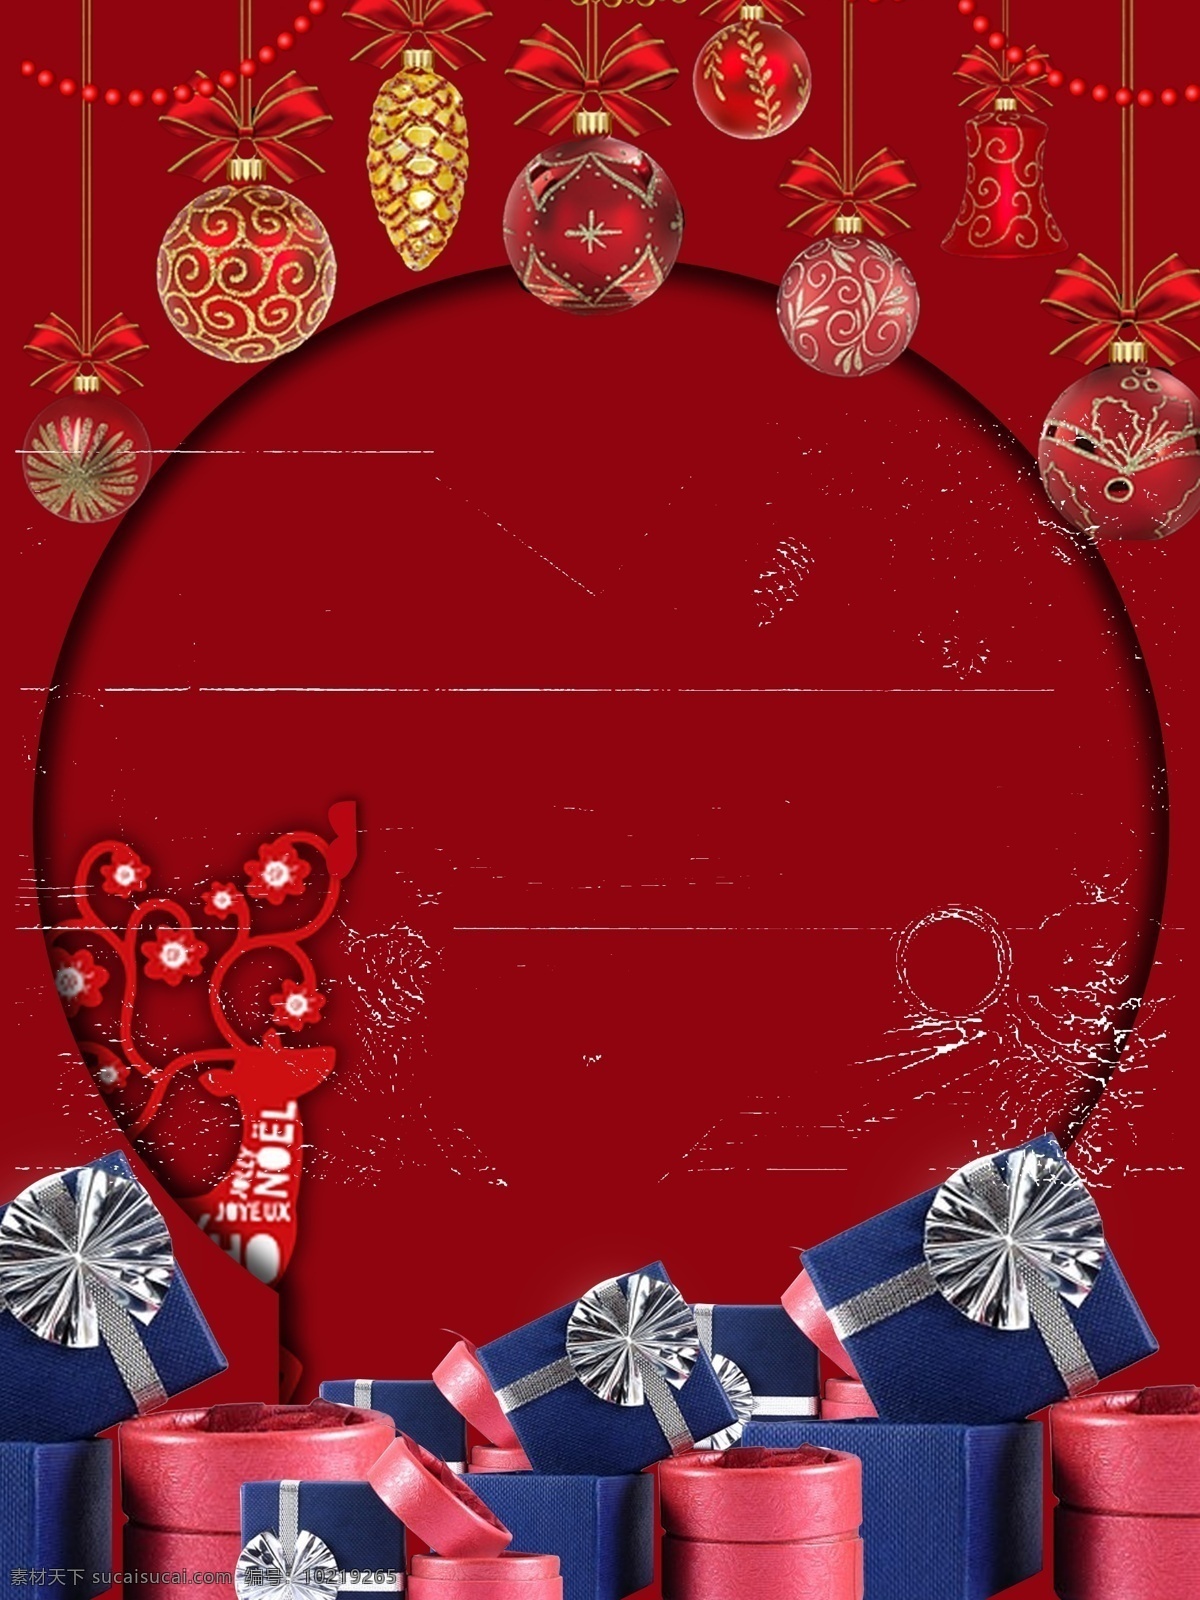 创意 中 国风 红色 新年 圣诞 礼物 背景 钻石 促销 背景图 圣诞背景 节日背景 背景设计 彩绘背景 背景展板 特邀背景 促销背景